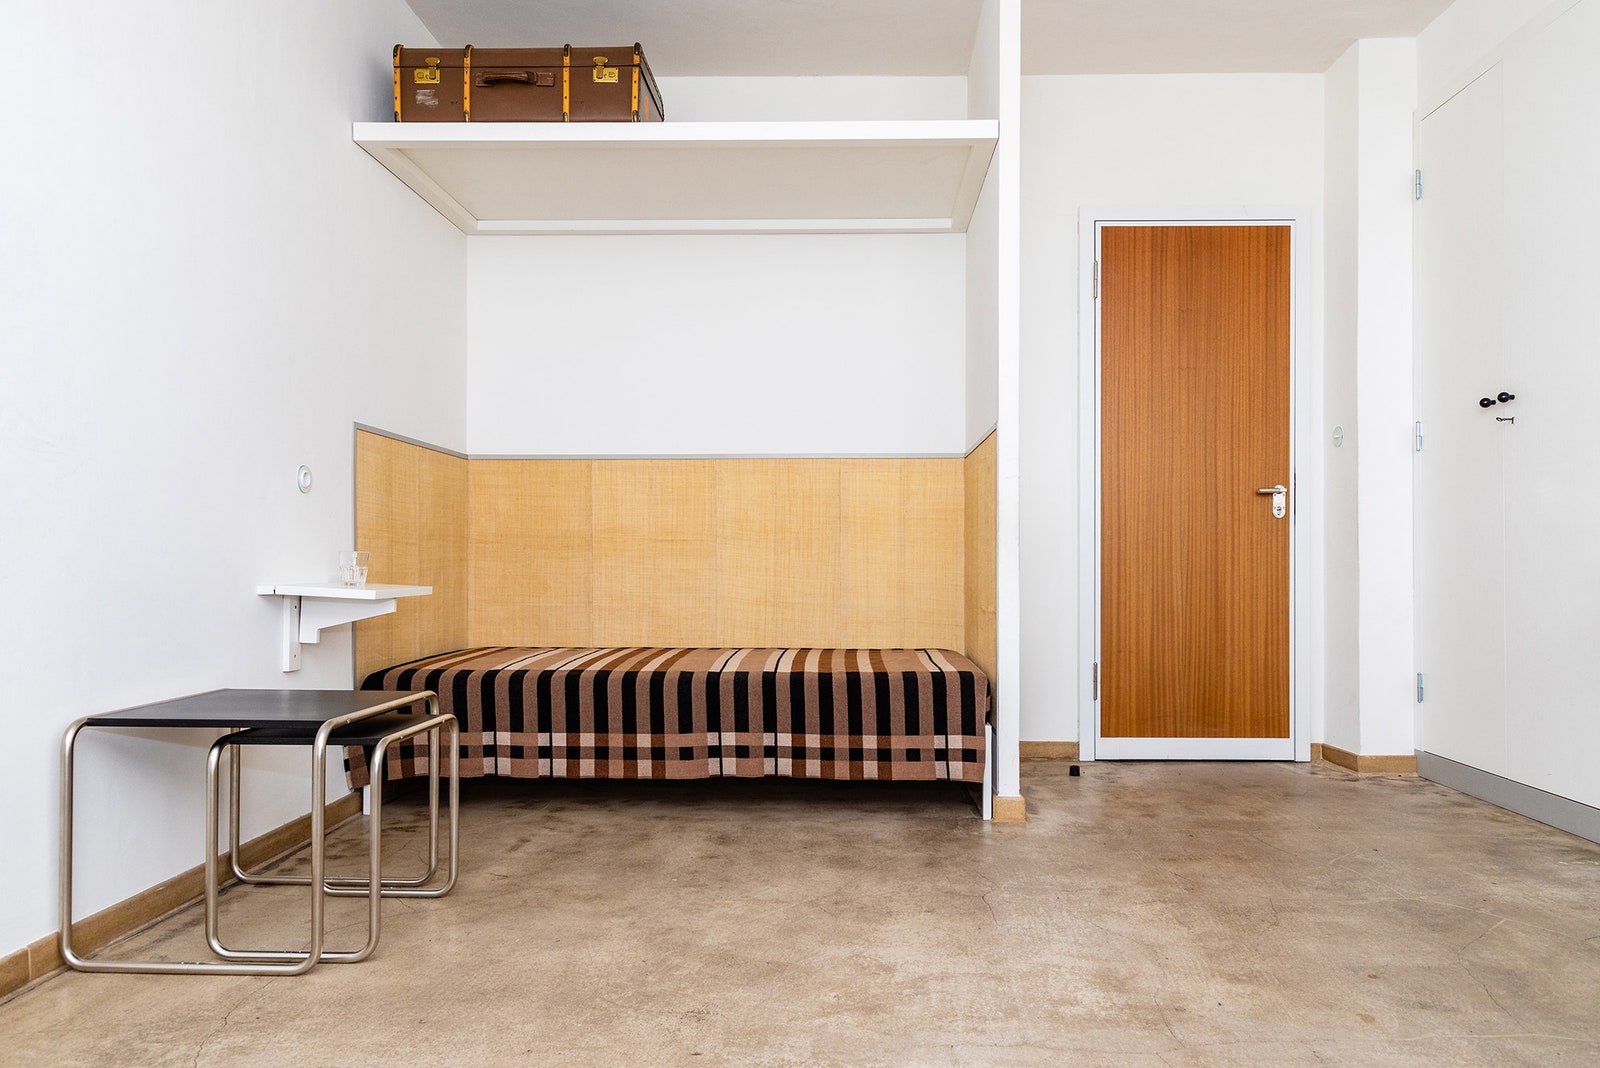 Студия Wallace Sewell воссоздала оригинальный дизайн покрывала которое использовали в общежитиях Баухауса в Дессау